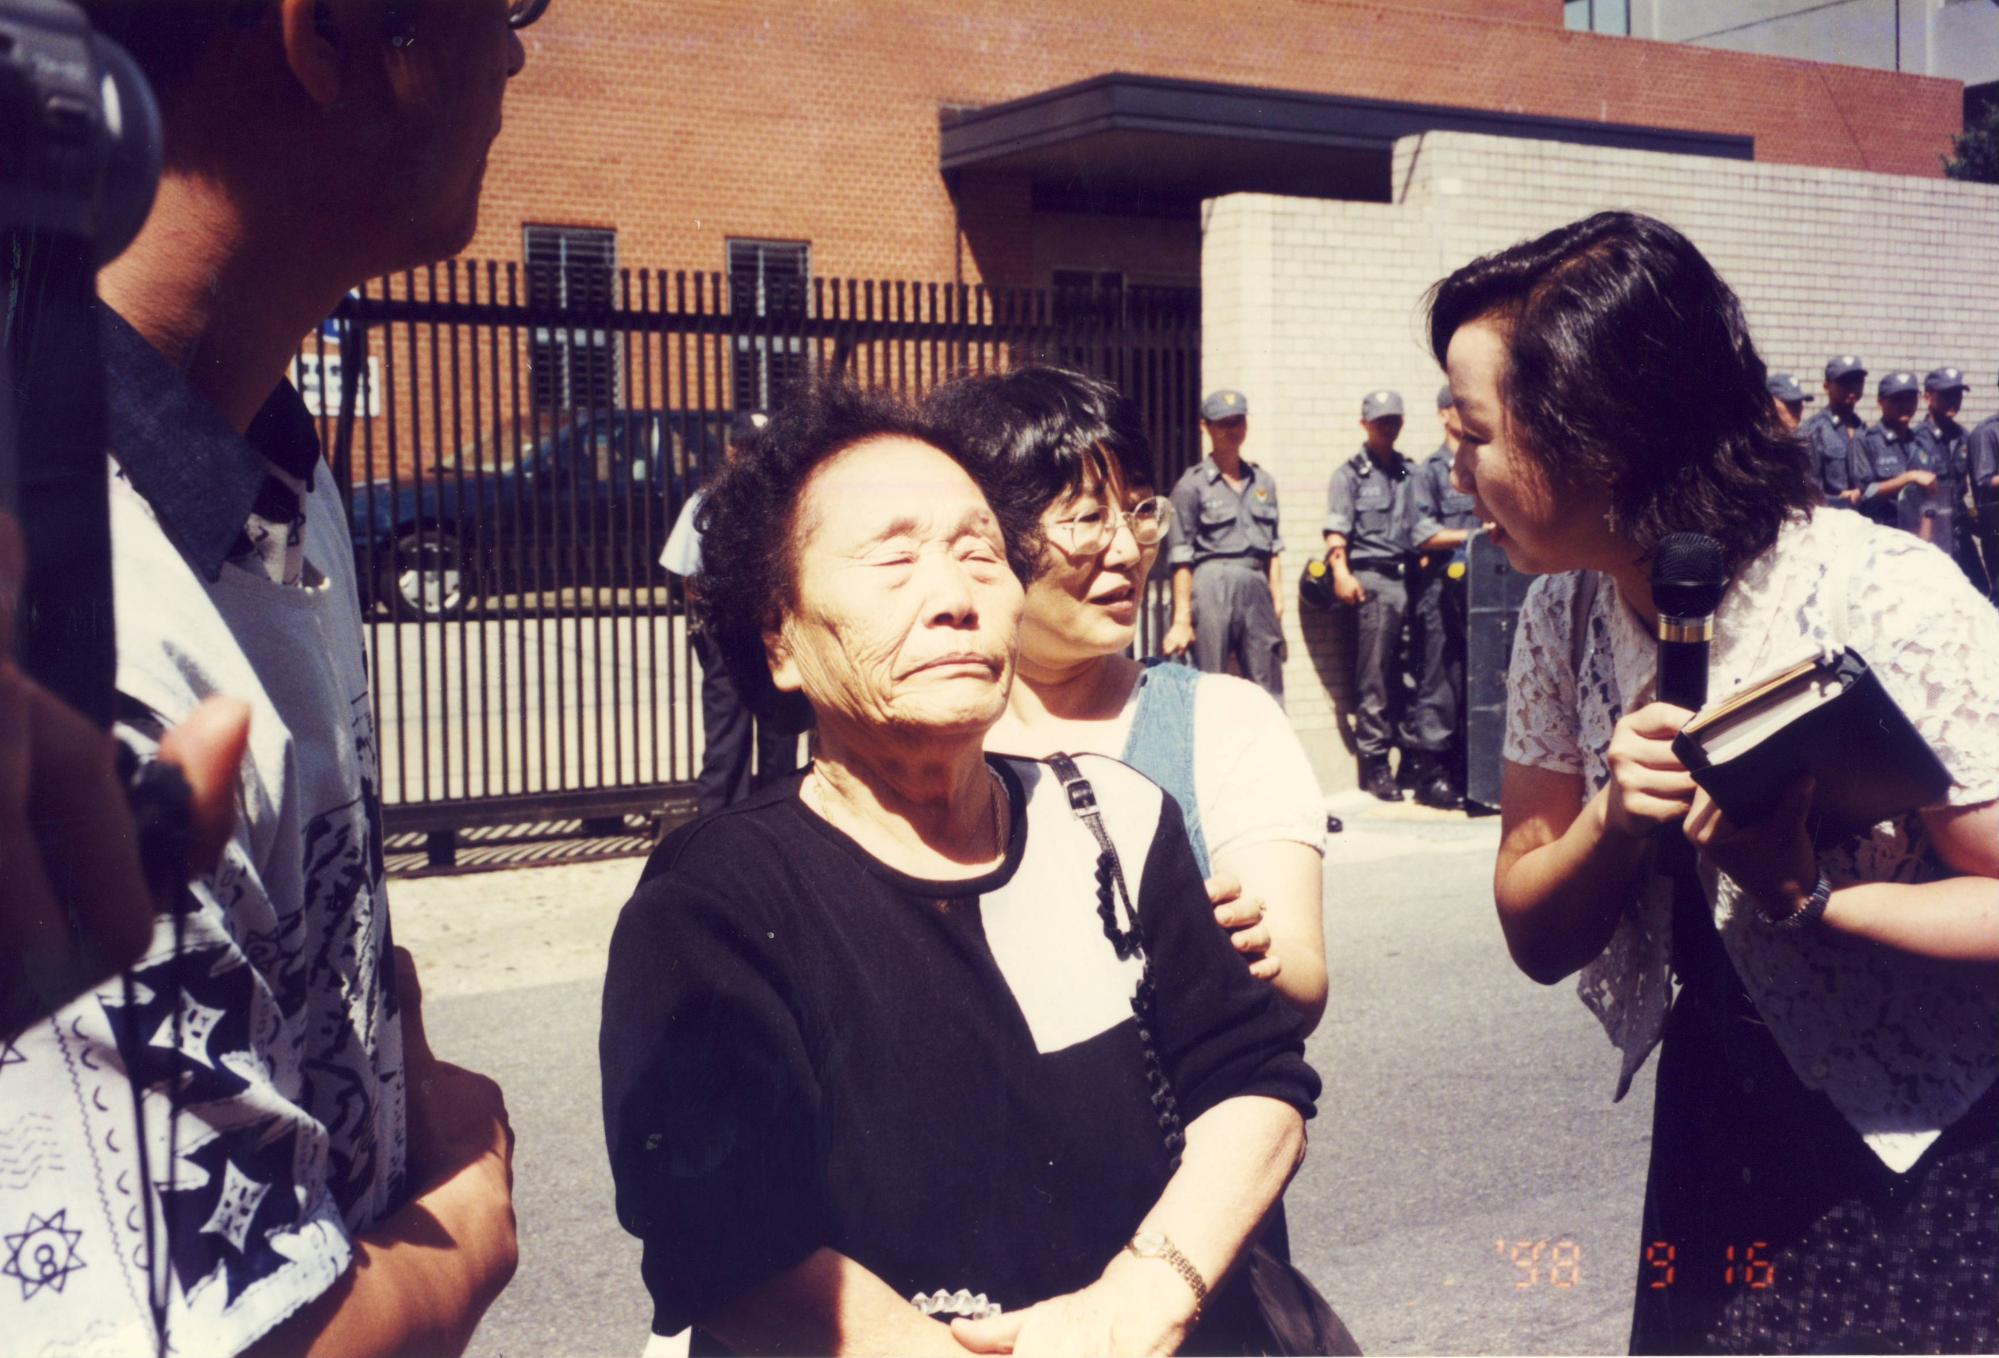 송신도가 1998년 9월 16일 서울 종로구 주한일본대사관 앞에서 열린 제330차 수요시위에 참석해 발언하던 중 눈을 감고 감정을 추스르고 있다. 오른쪽은 가와타 후미코. ⓒ한국정신